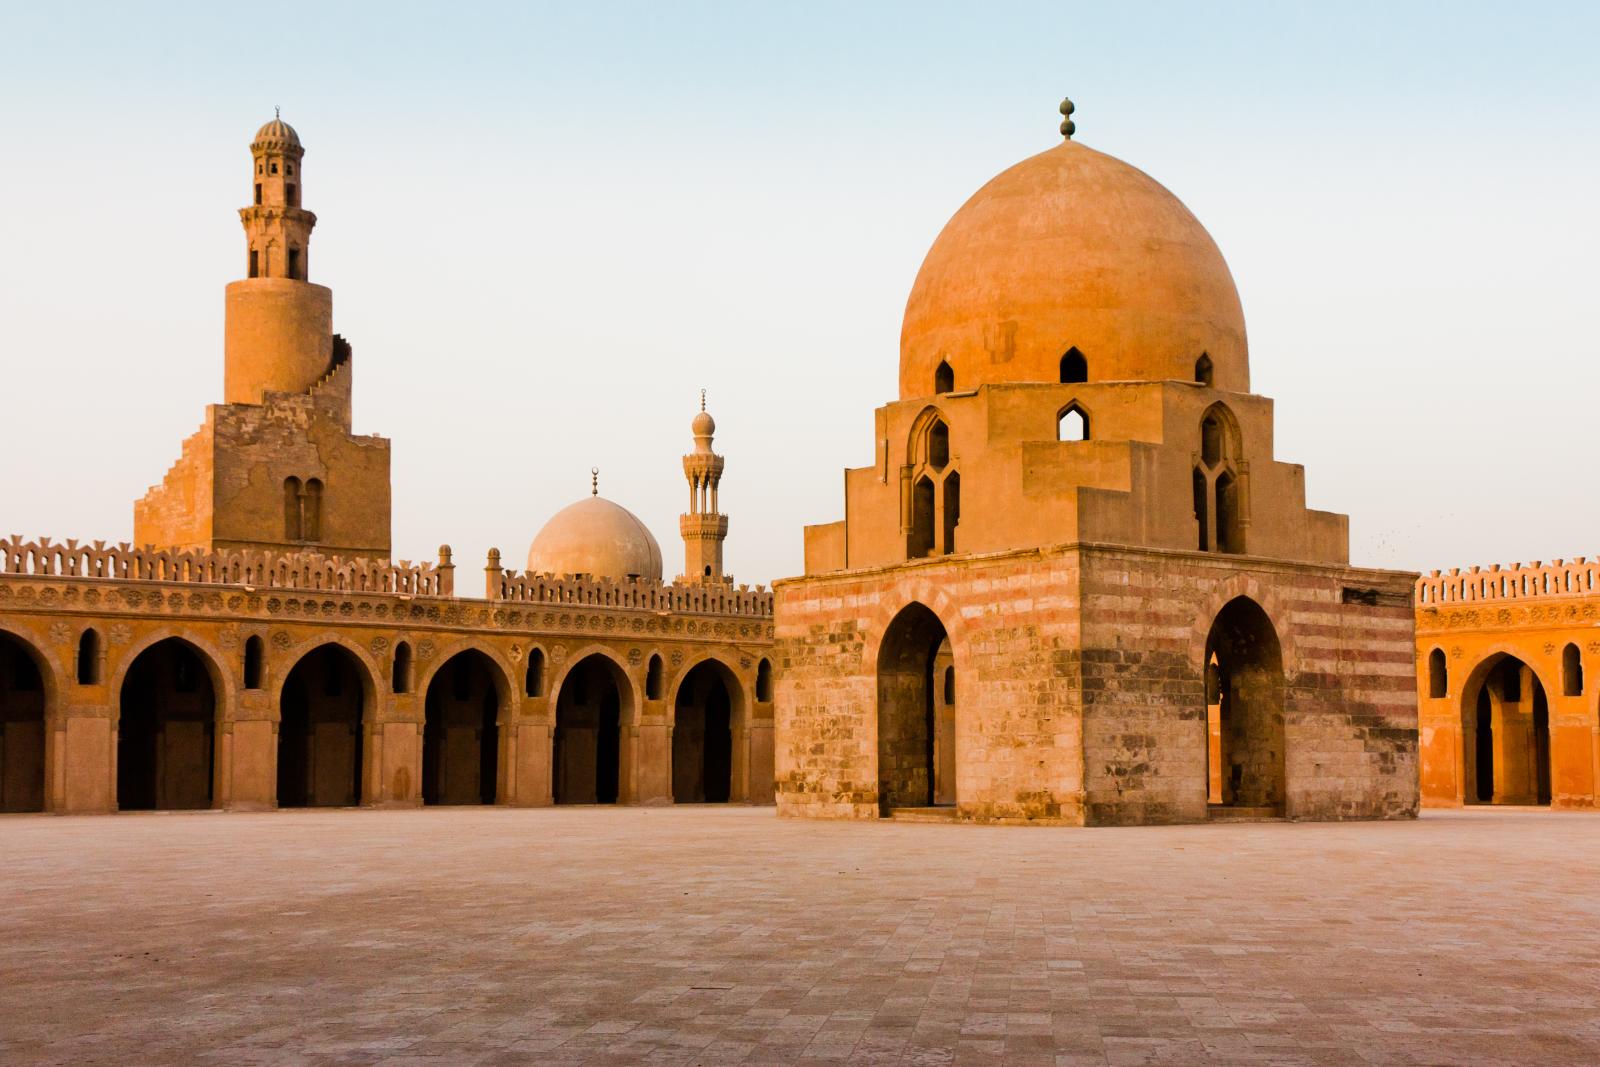 سلسلة العمارة الإسلامية مسجد ابن طولون في القاهرة موقع الأكاديمية بوست